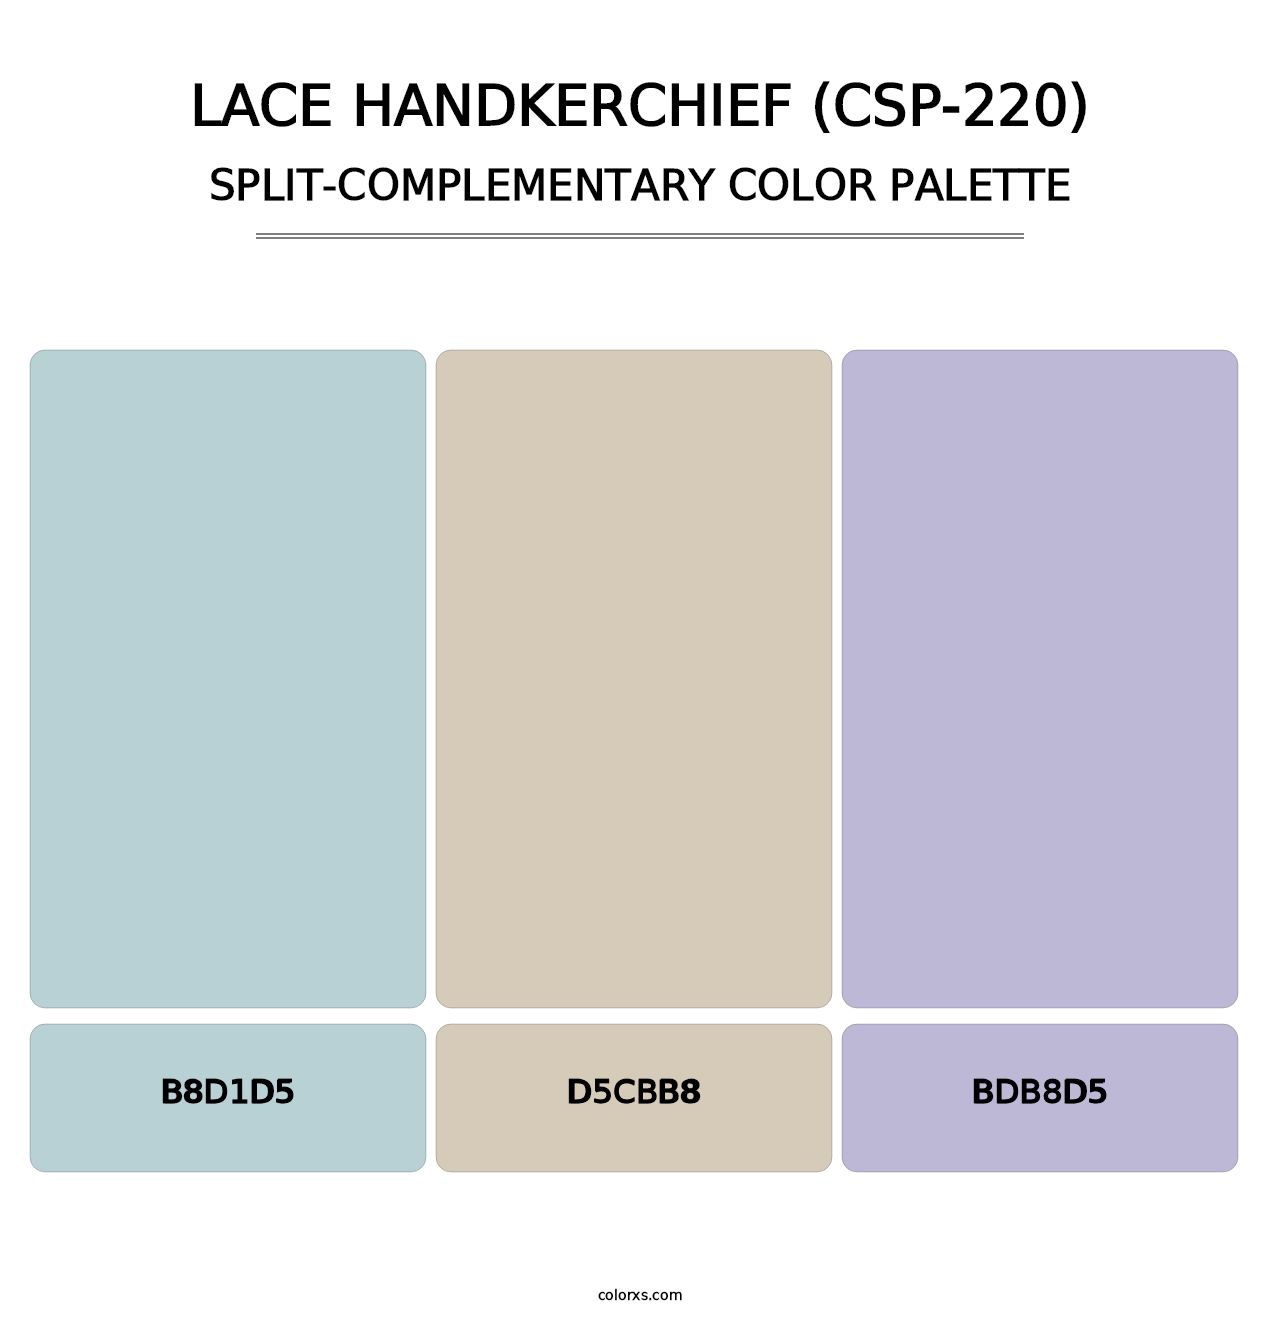 Lace Handkerchief (CSP-220) - Split-Complementary Color Palette